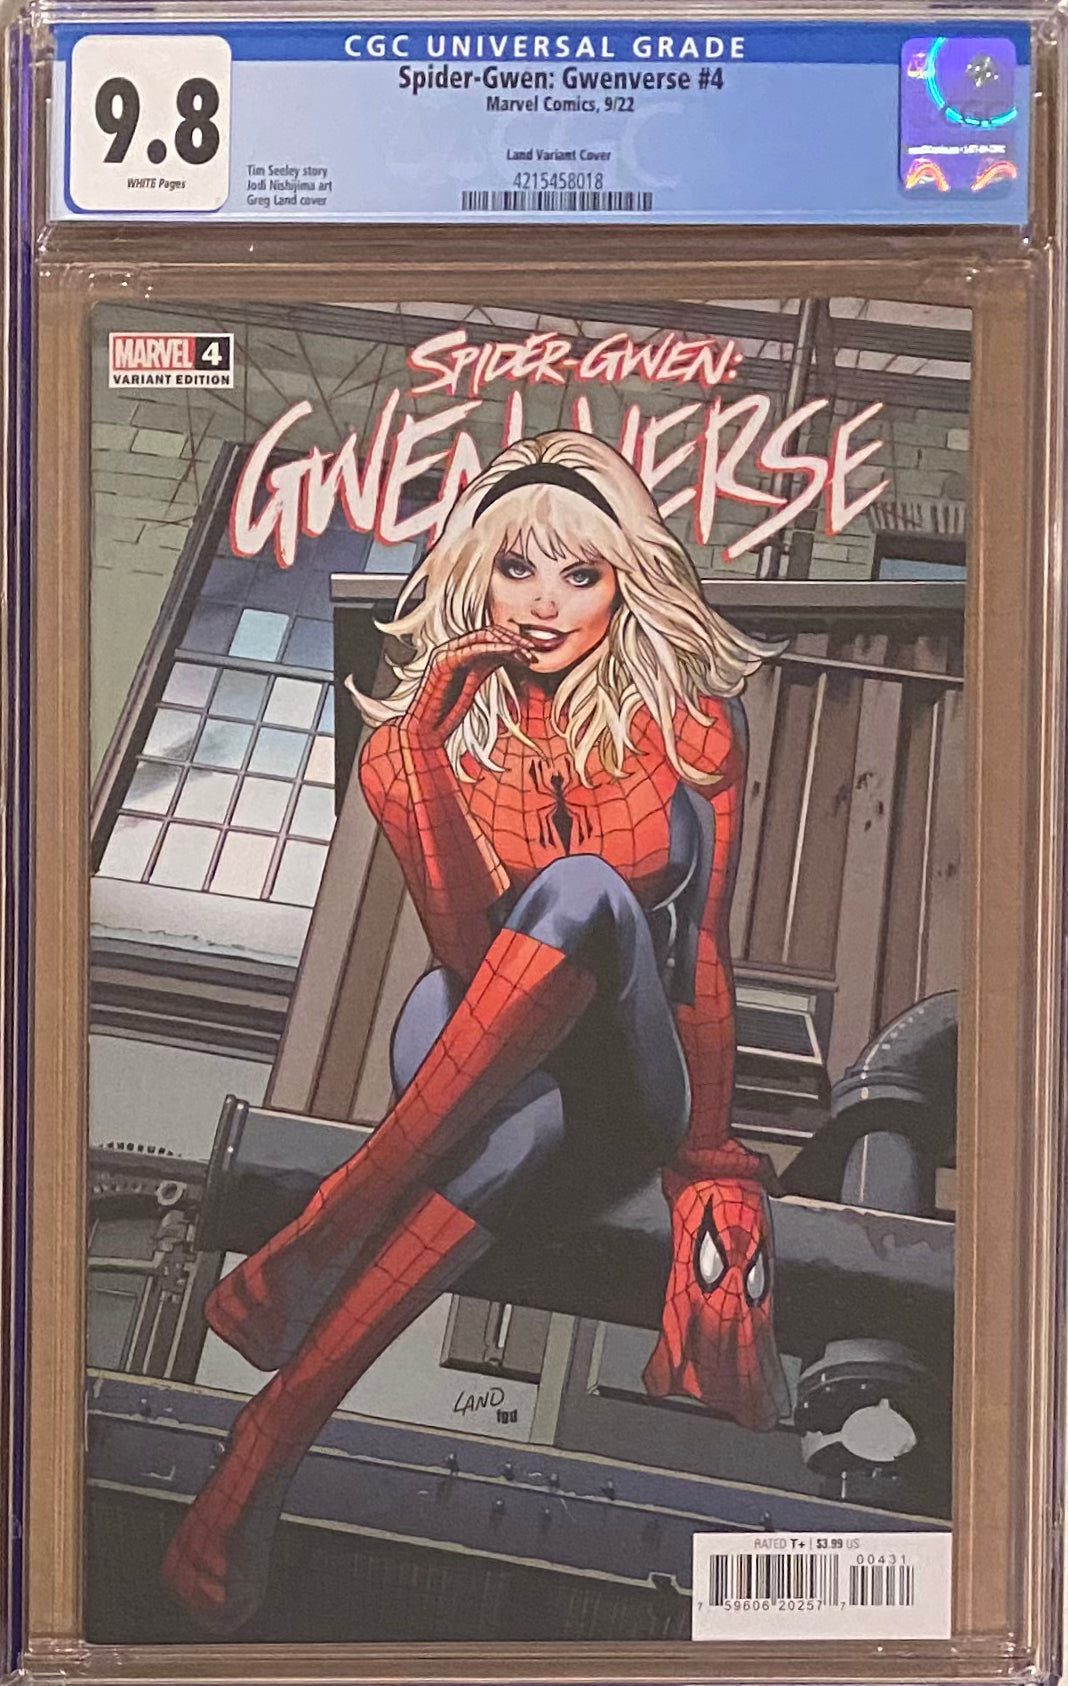 Spider-Gwen: Gwenverse #4 Land Homage Variant CGC 9.8